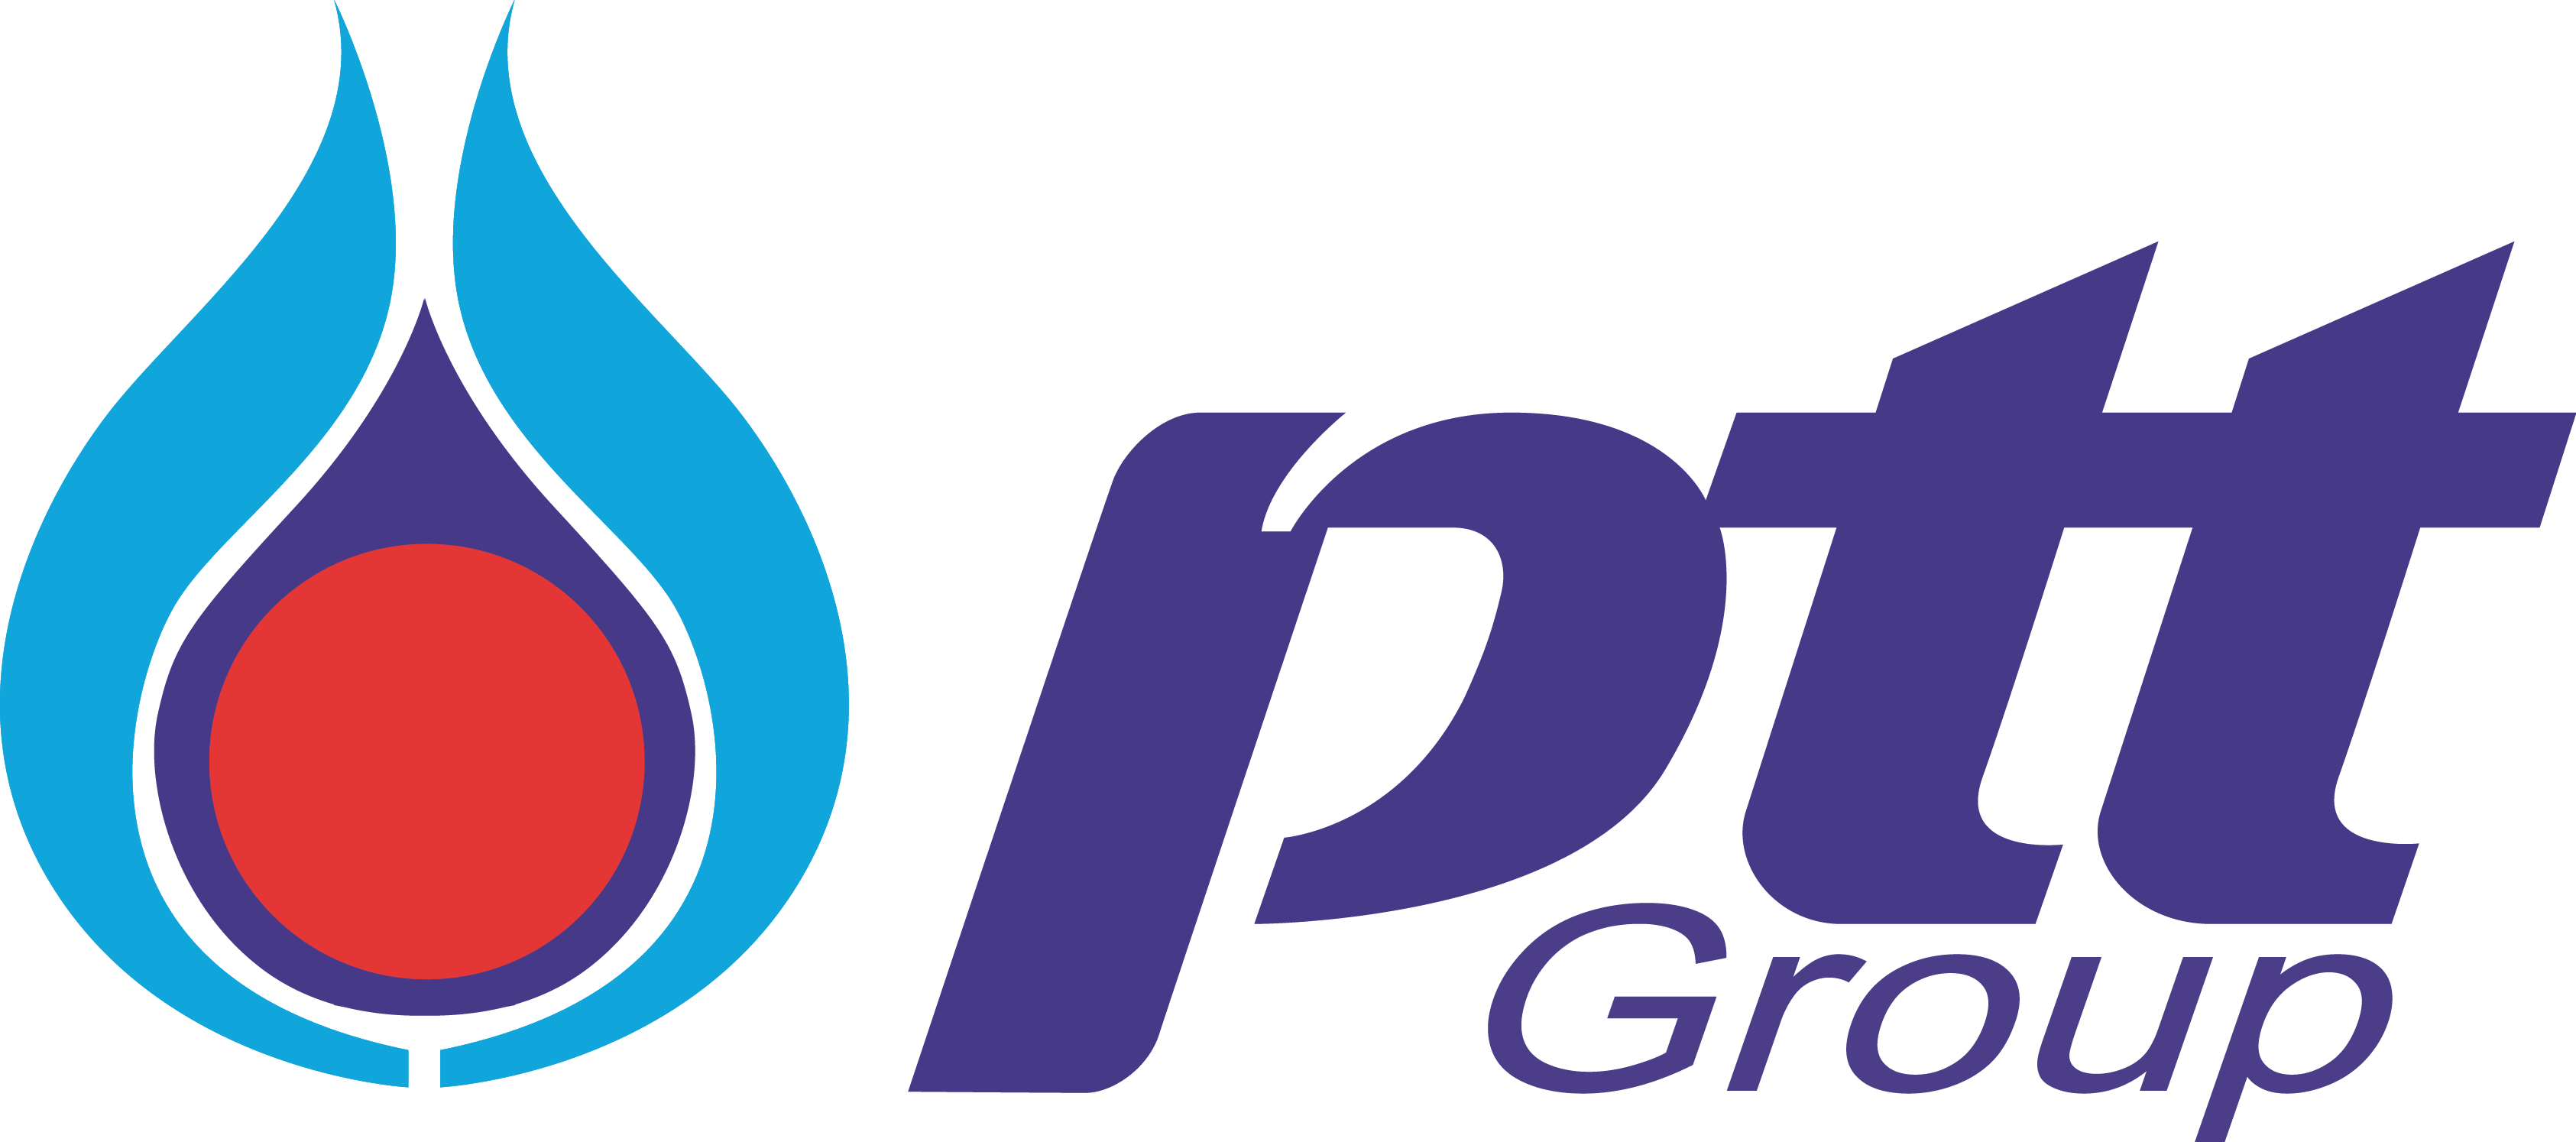 PTT Logo [pttplc.com]